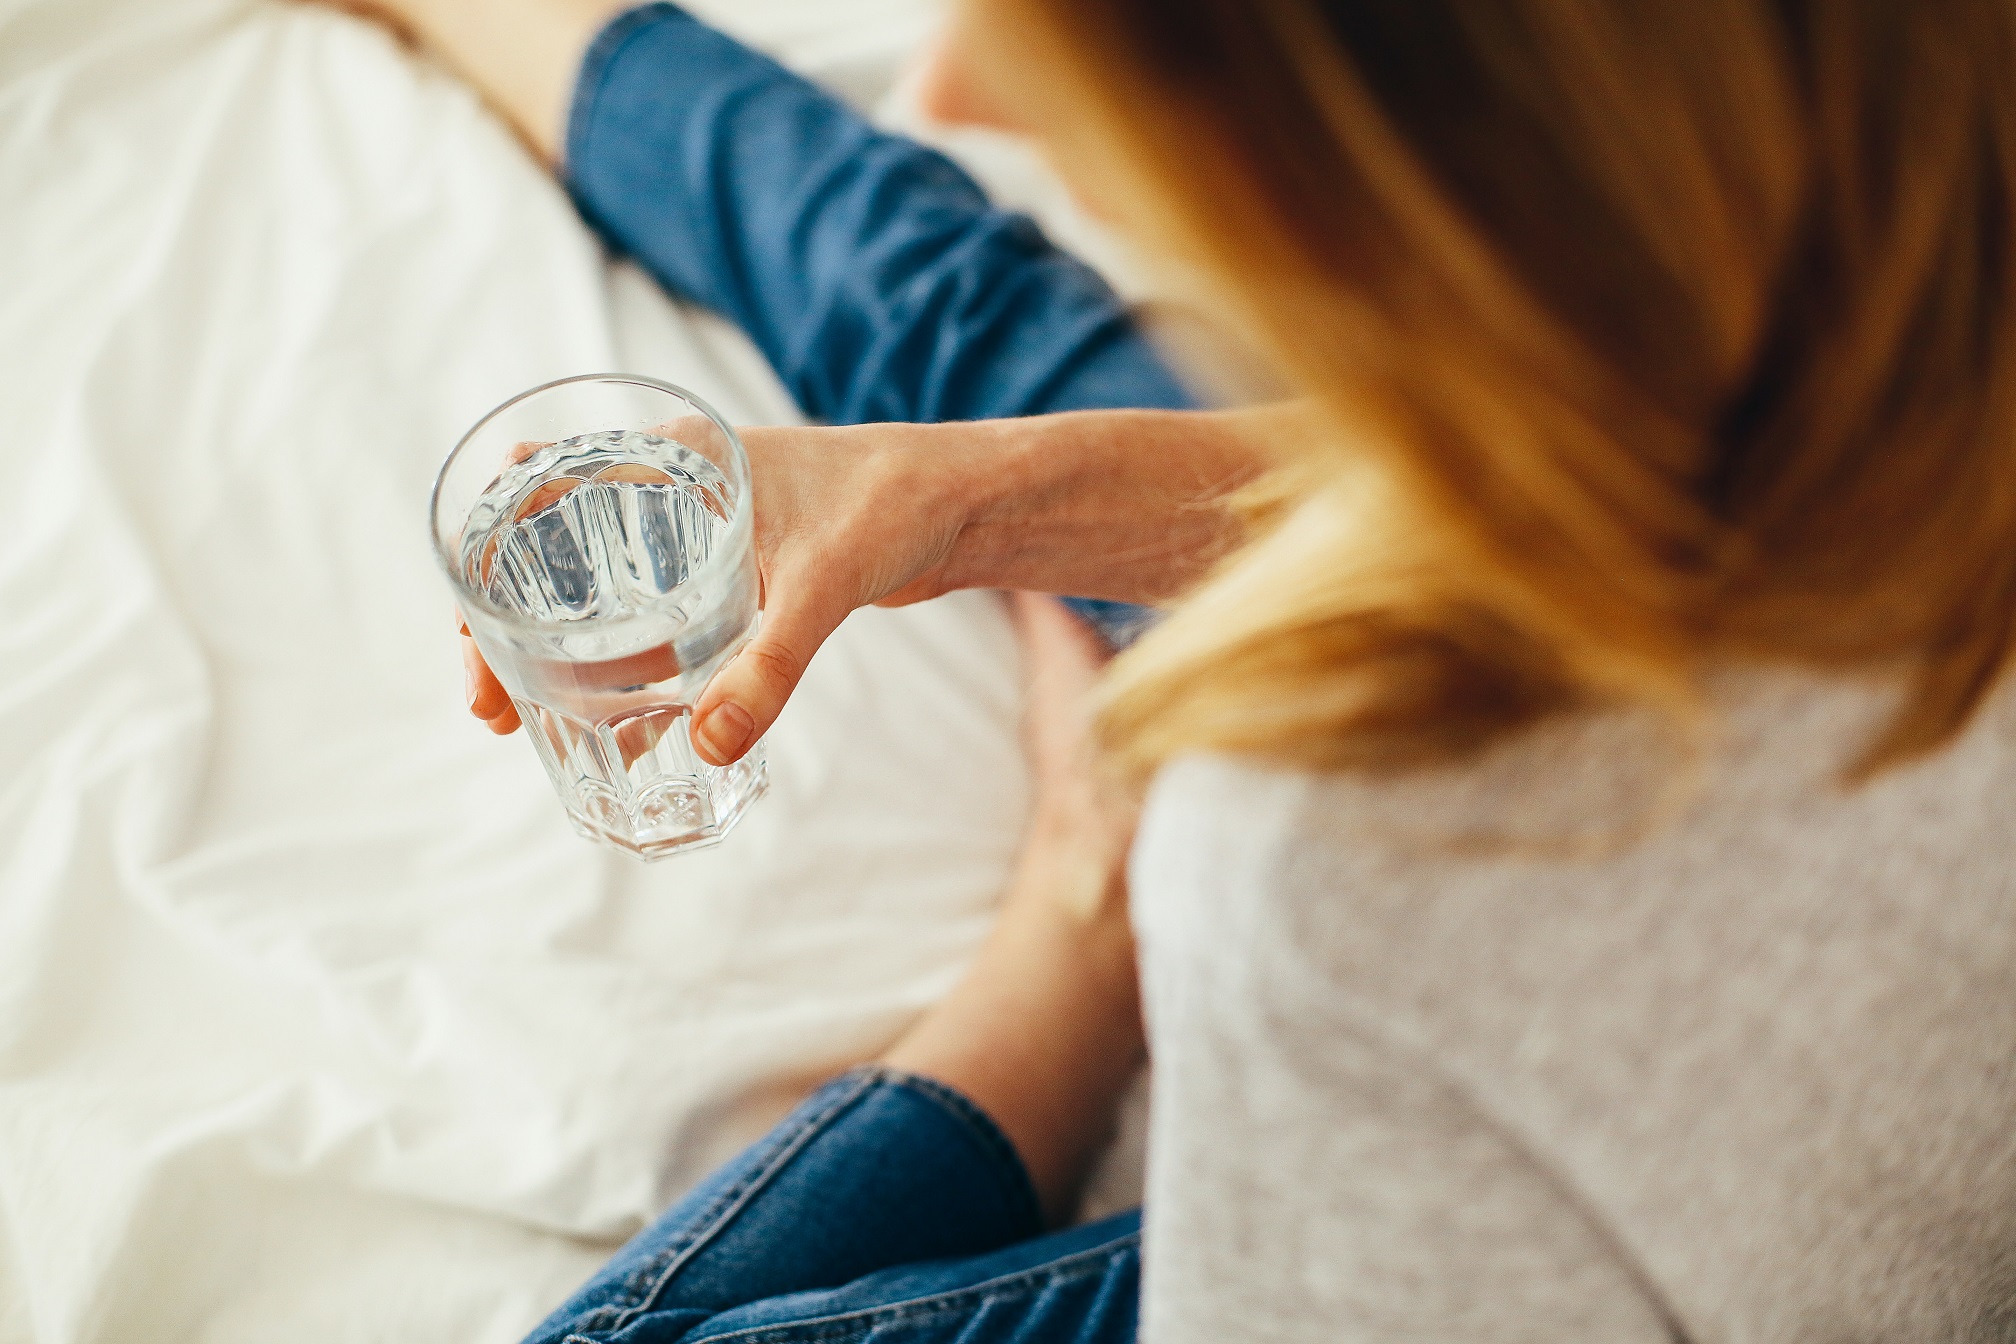 شرب الكثير من الماء قبل النوم ليس فكرة جيدة؛ لأنه يمكن أن يؤثر في الواقع على نوعية نومك (بيكسيلز)